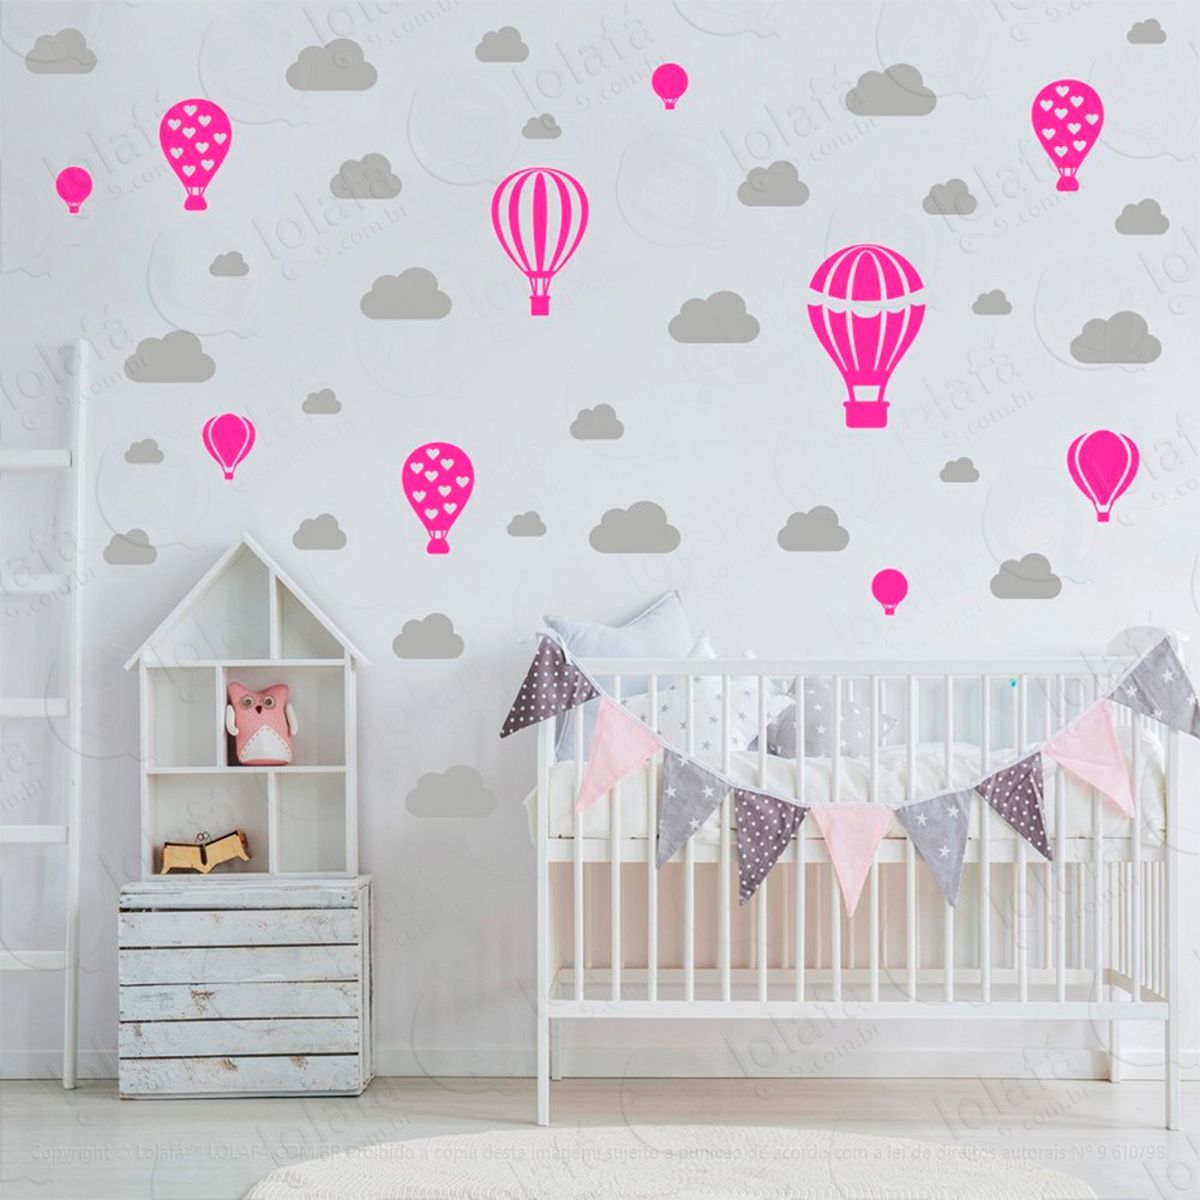 adesivos balões e nuvens 42 peças adesivos para quarto de bebê infantil - mod:797